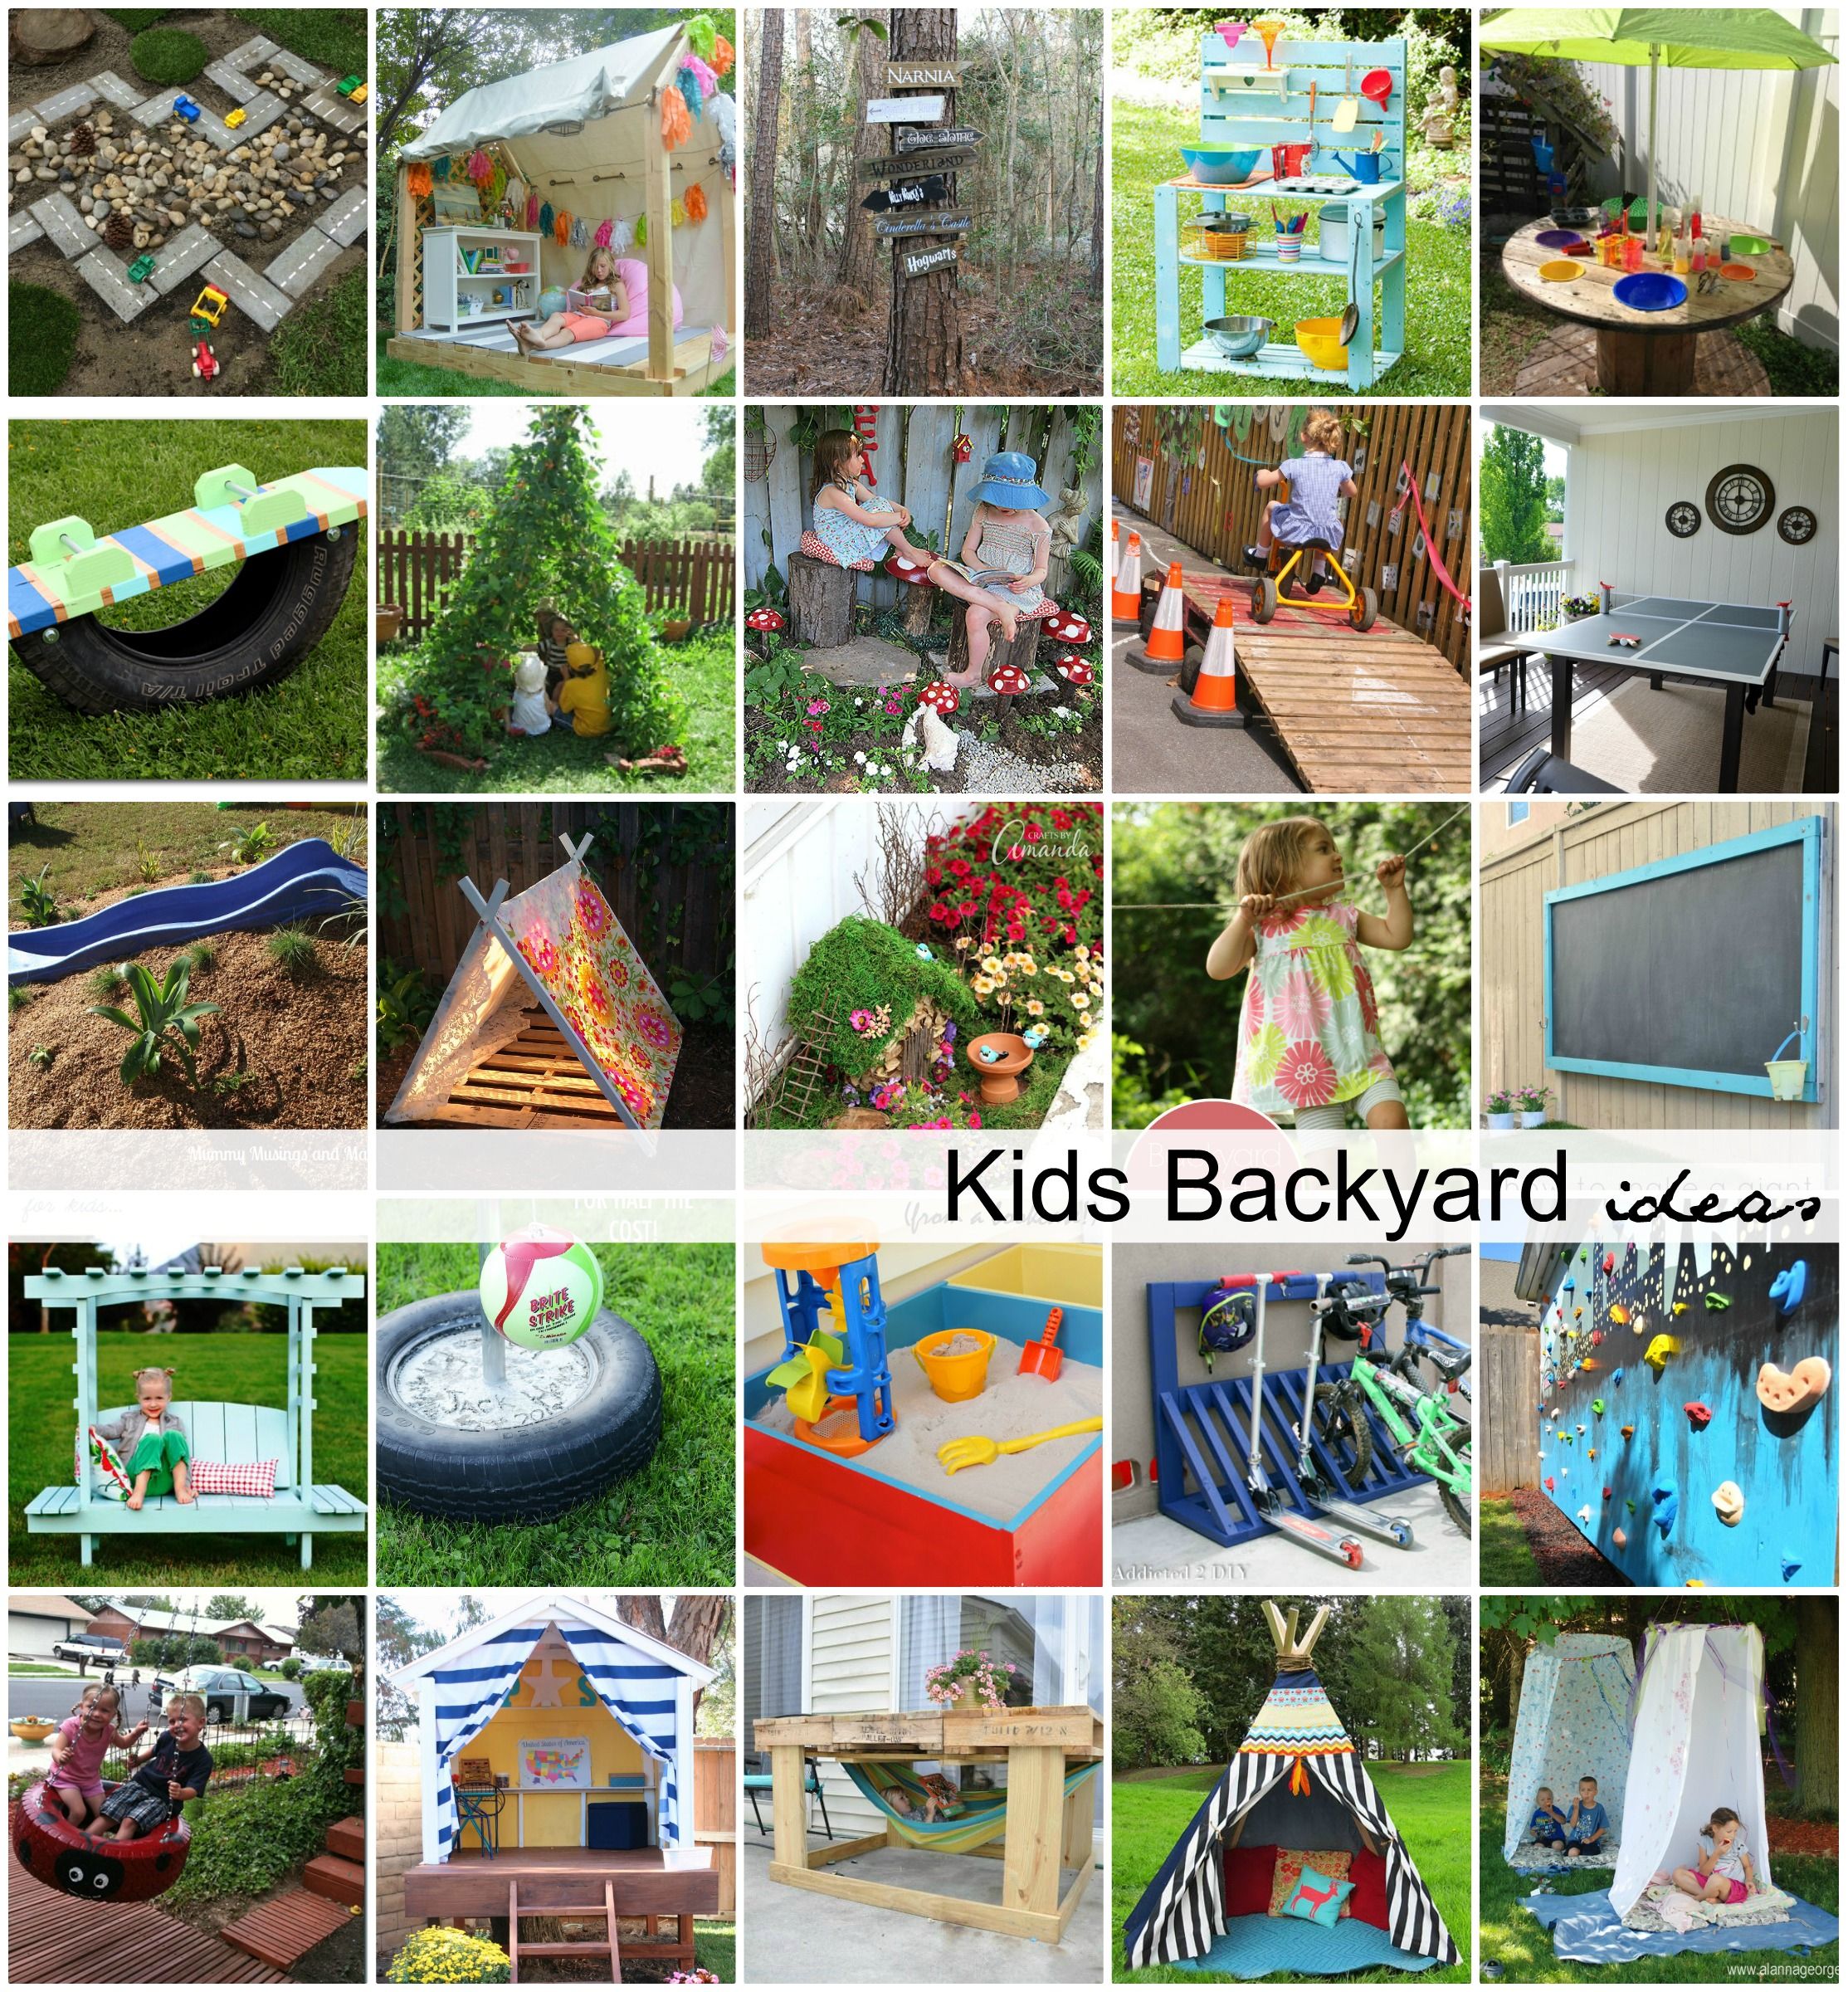 DIY Backyard Ideas for Kids -   Kids Activities Ideas